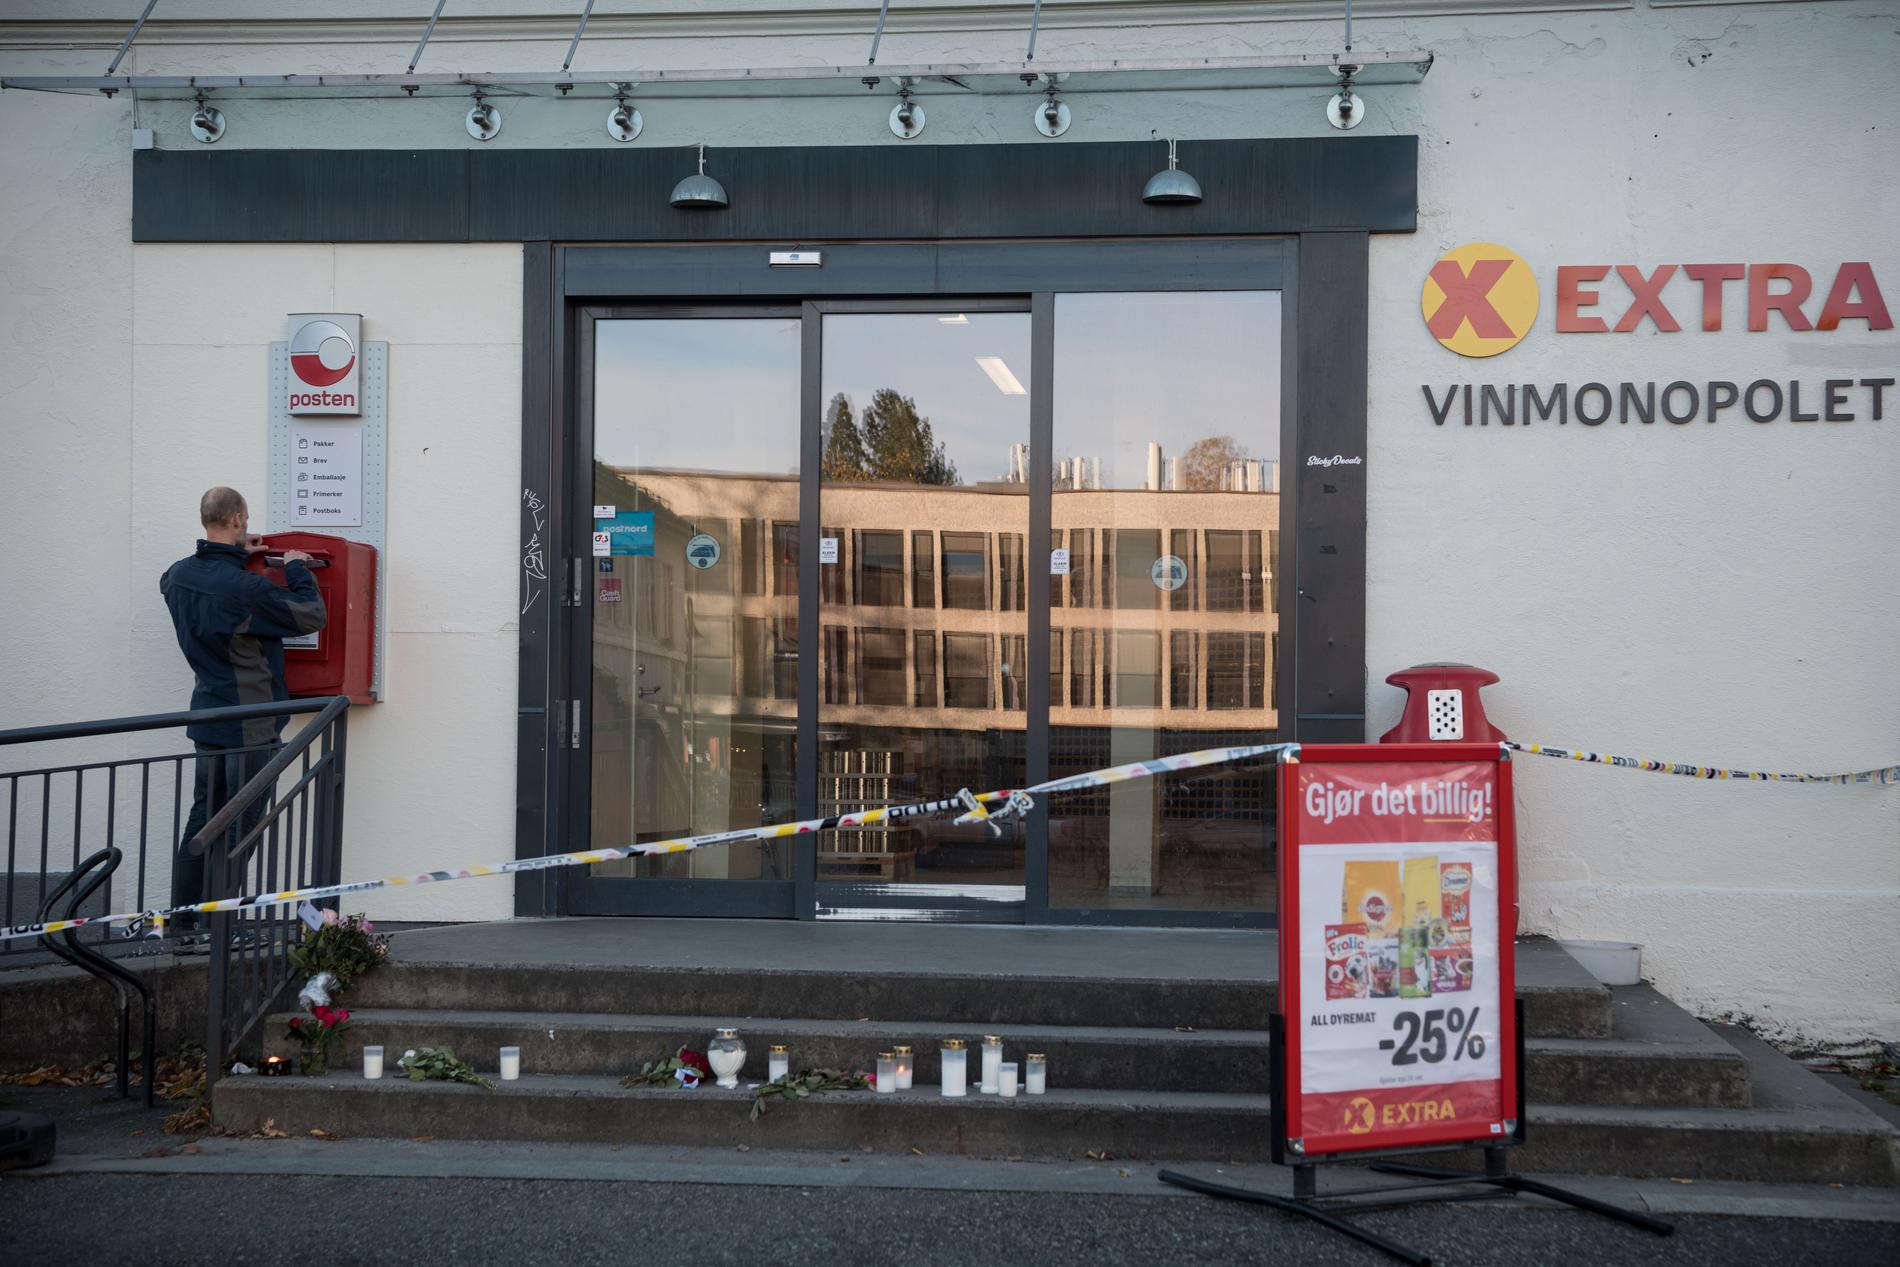 Det var inne på Coop Extra i Kongsberg som Espen Andersen Bråthen började skjuta mot människor med en pilbåge.